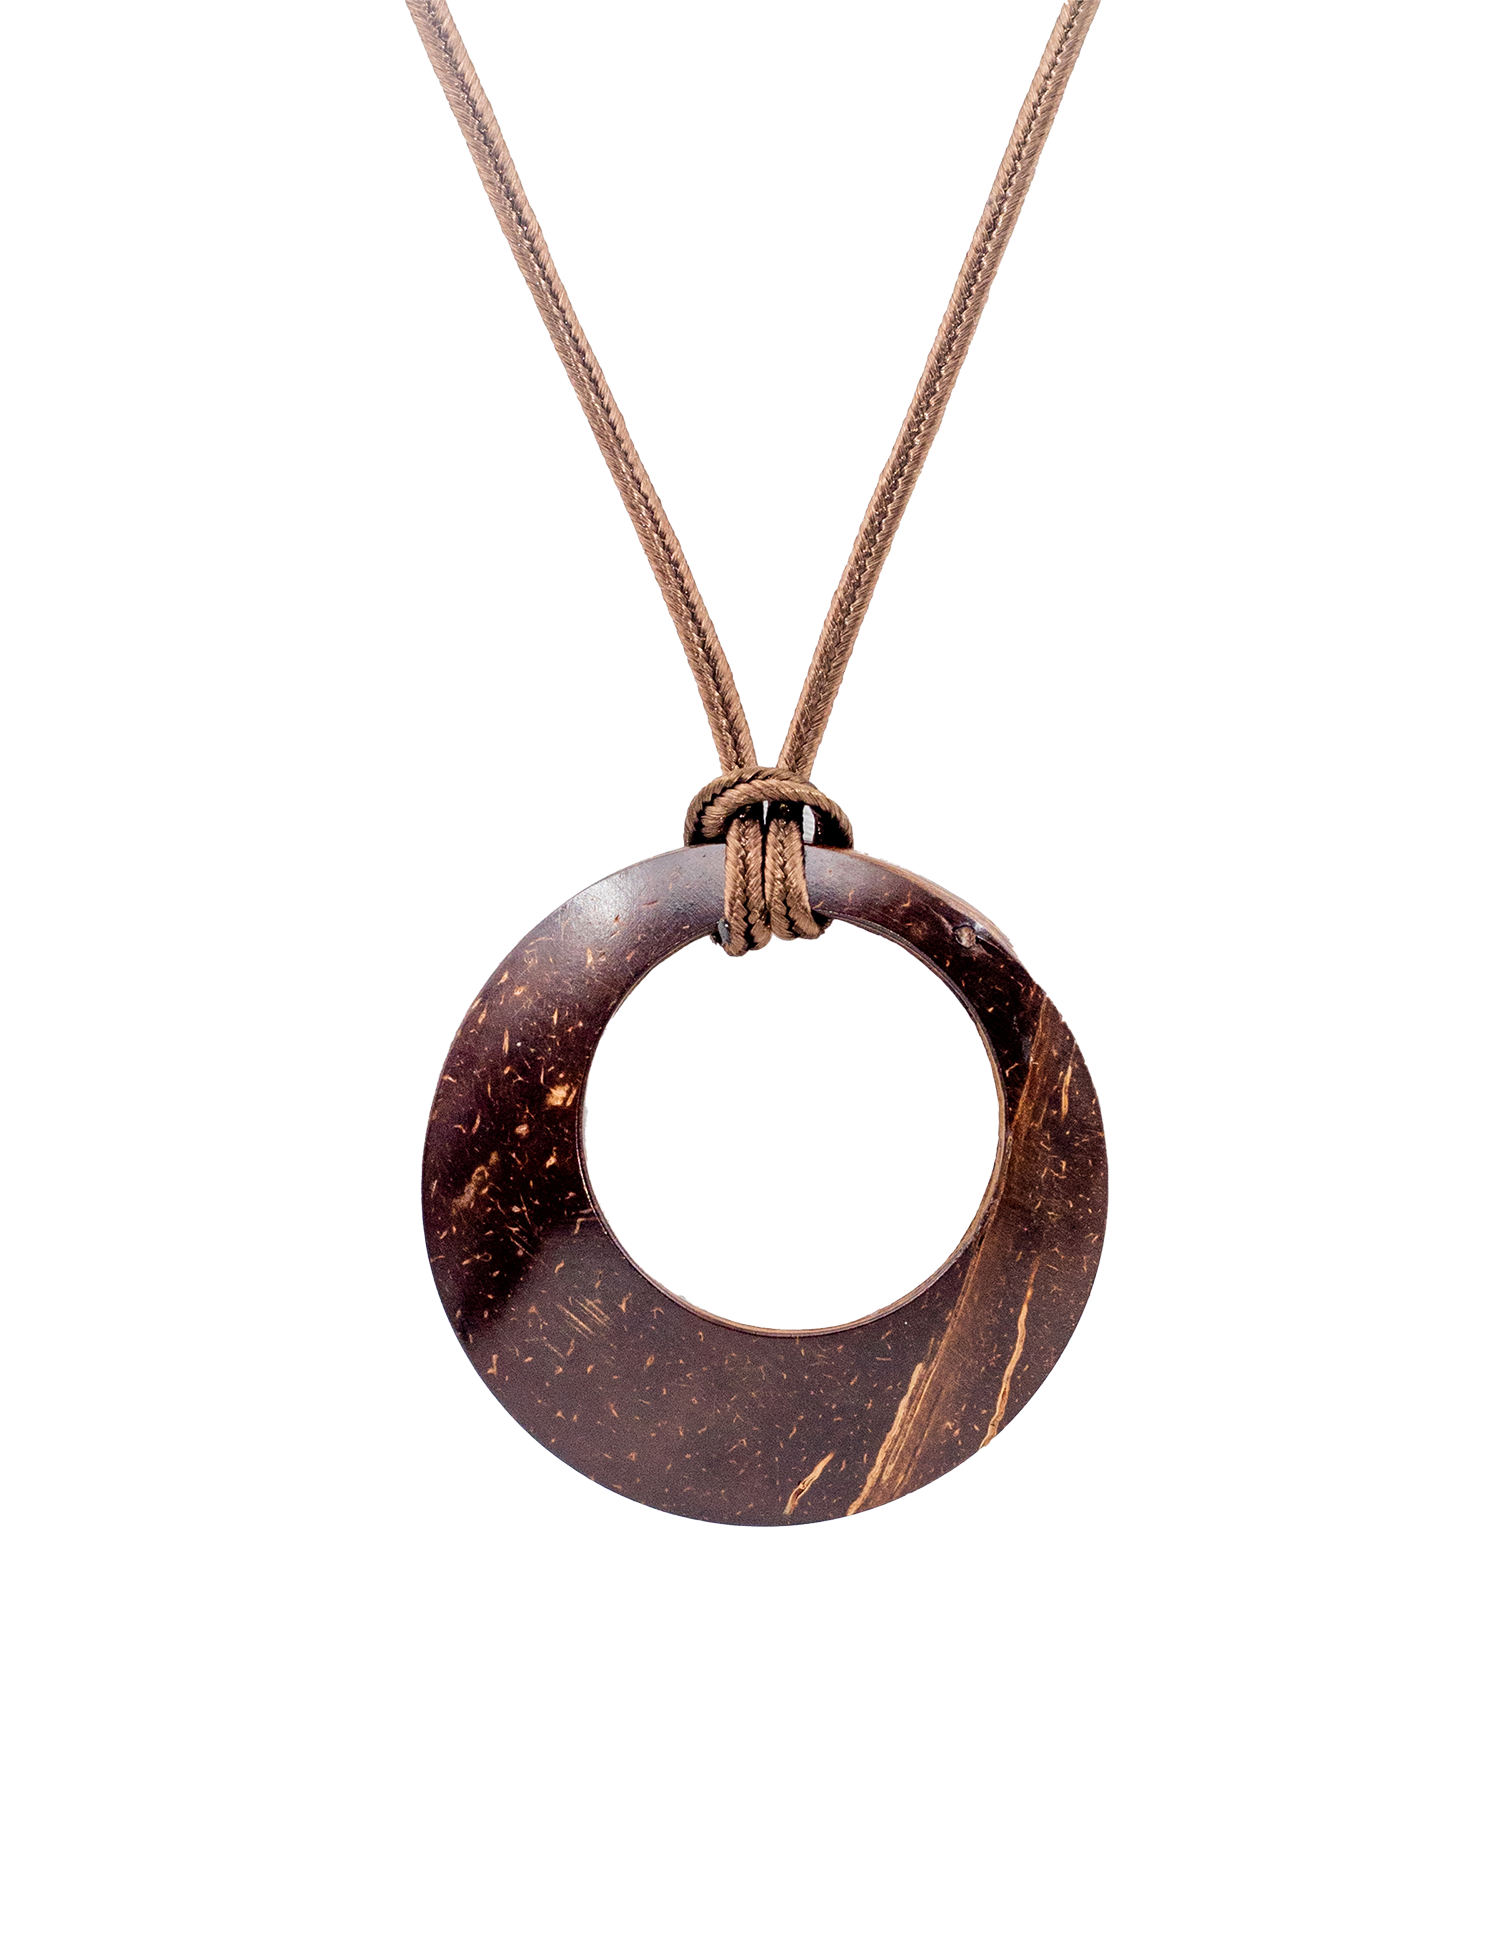 Oval shape necklace